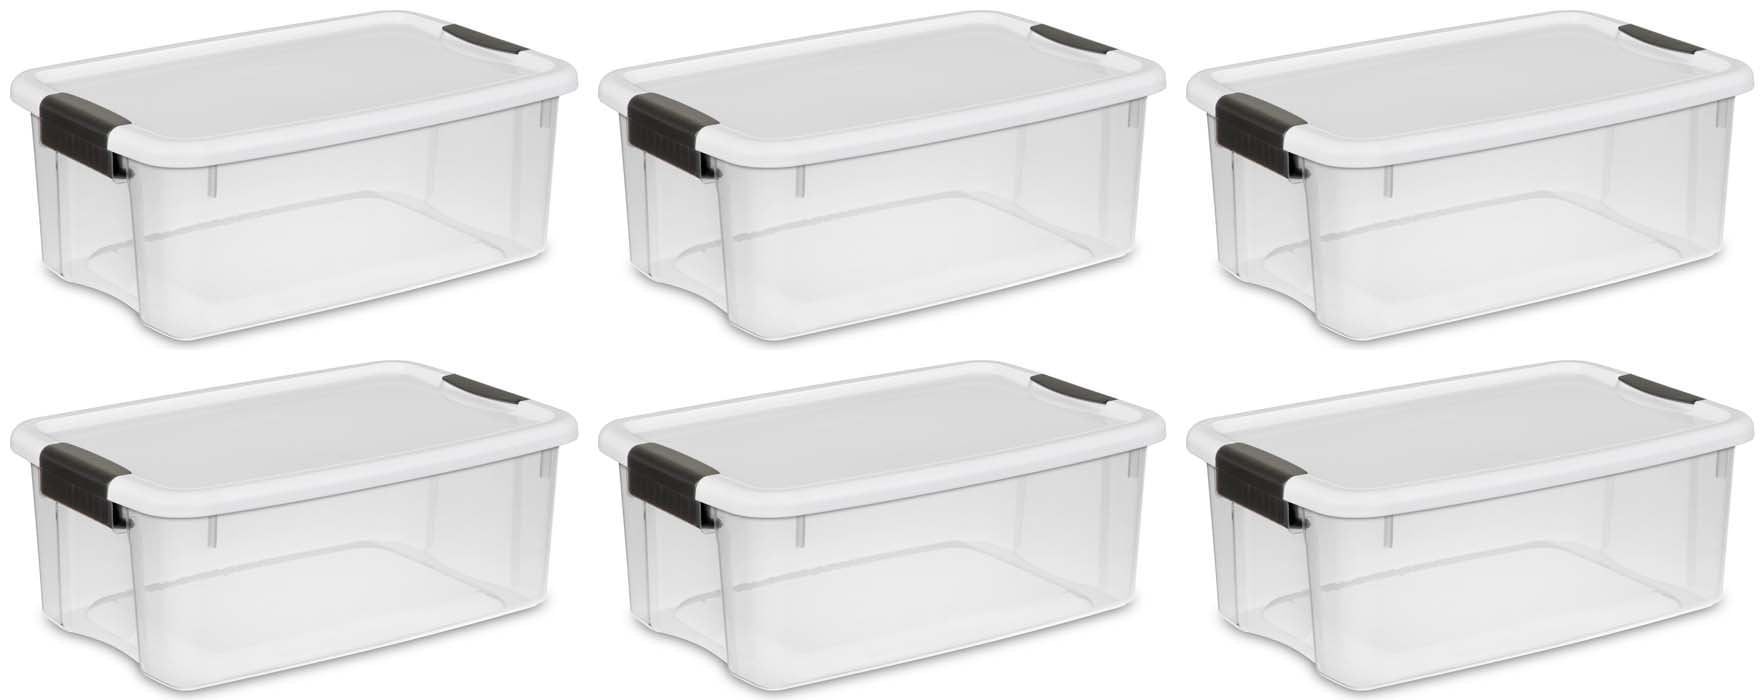 Sterilite 30 Quart/28 Liter Ultra Latch Box Clear w/ a White Lid & Black Latches 